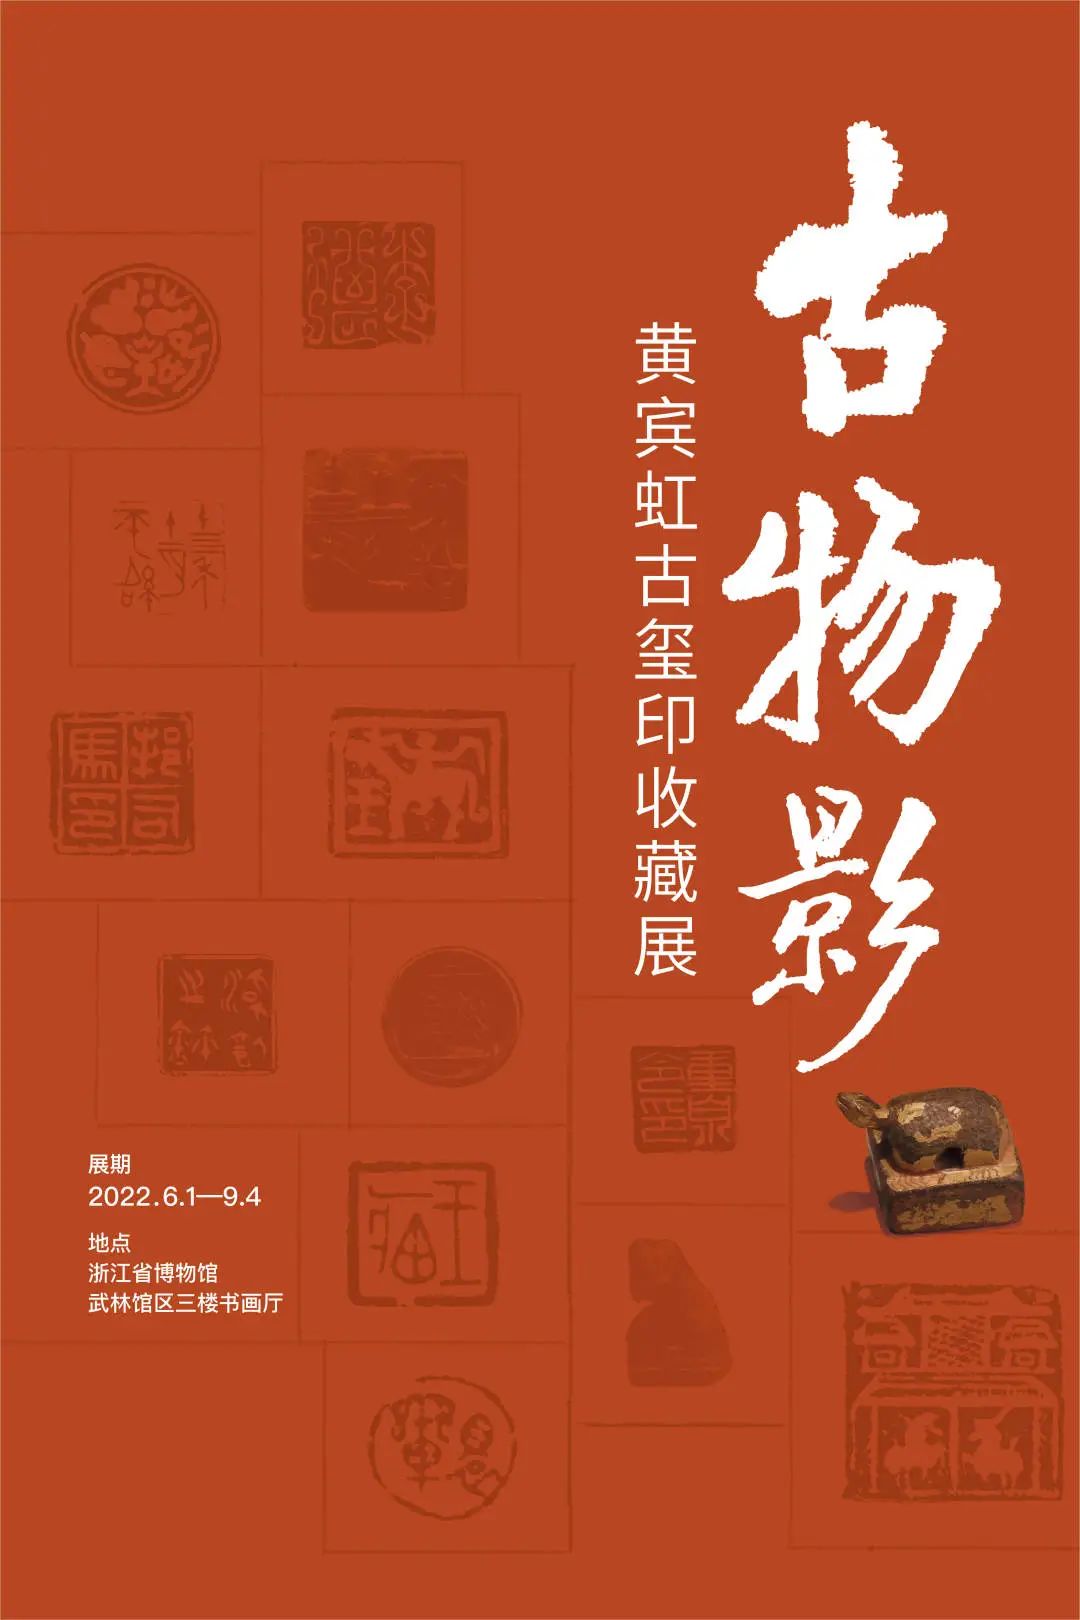 国内最具学术与艺术价值的玺印收藏集合体之一《古物影——黄宾虹古玺印收藏集萃》(图106)